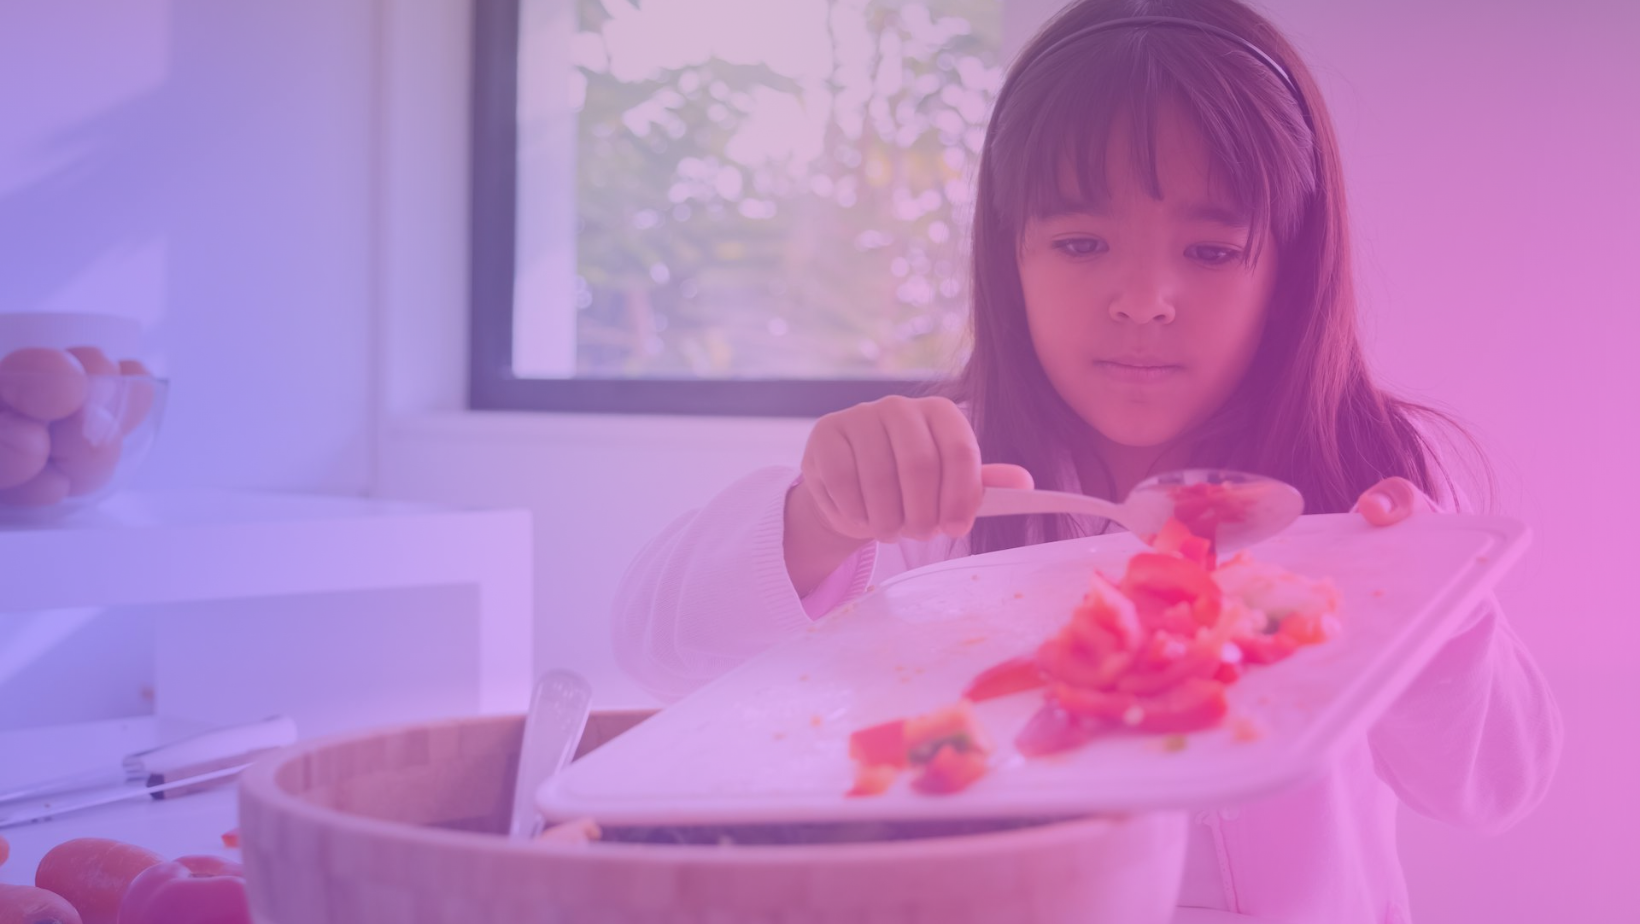 Lire la suite à propos de l’article Recettes faciles et amusantes pour les enfants : plaisir et apprentissage en cuisine